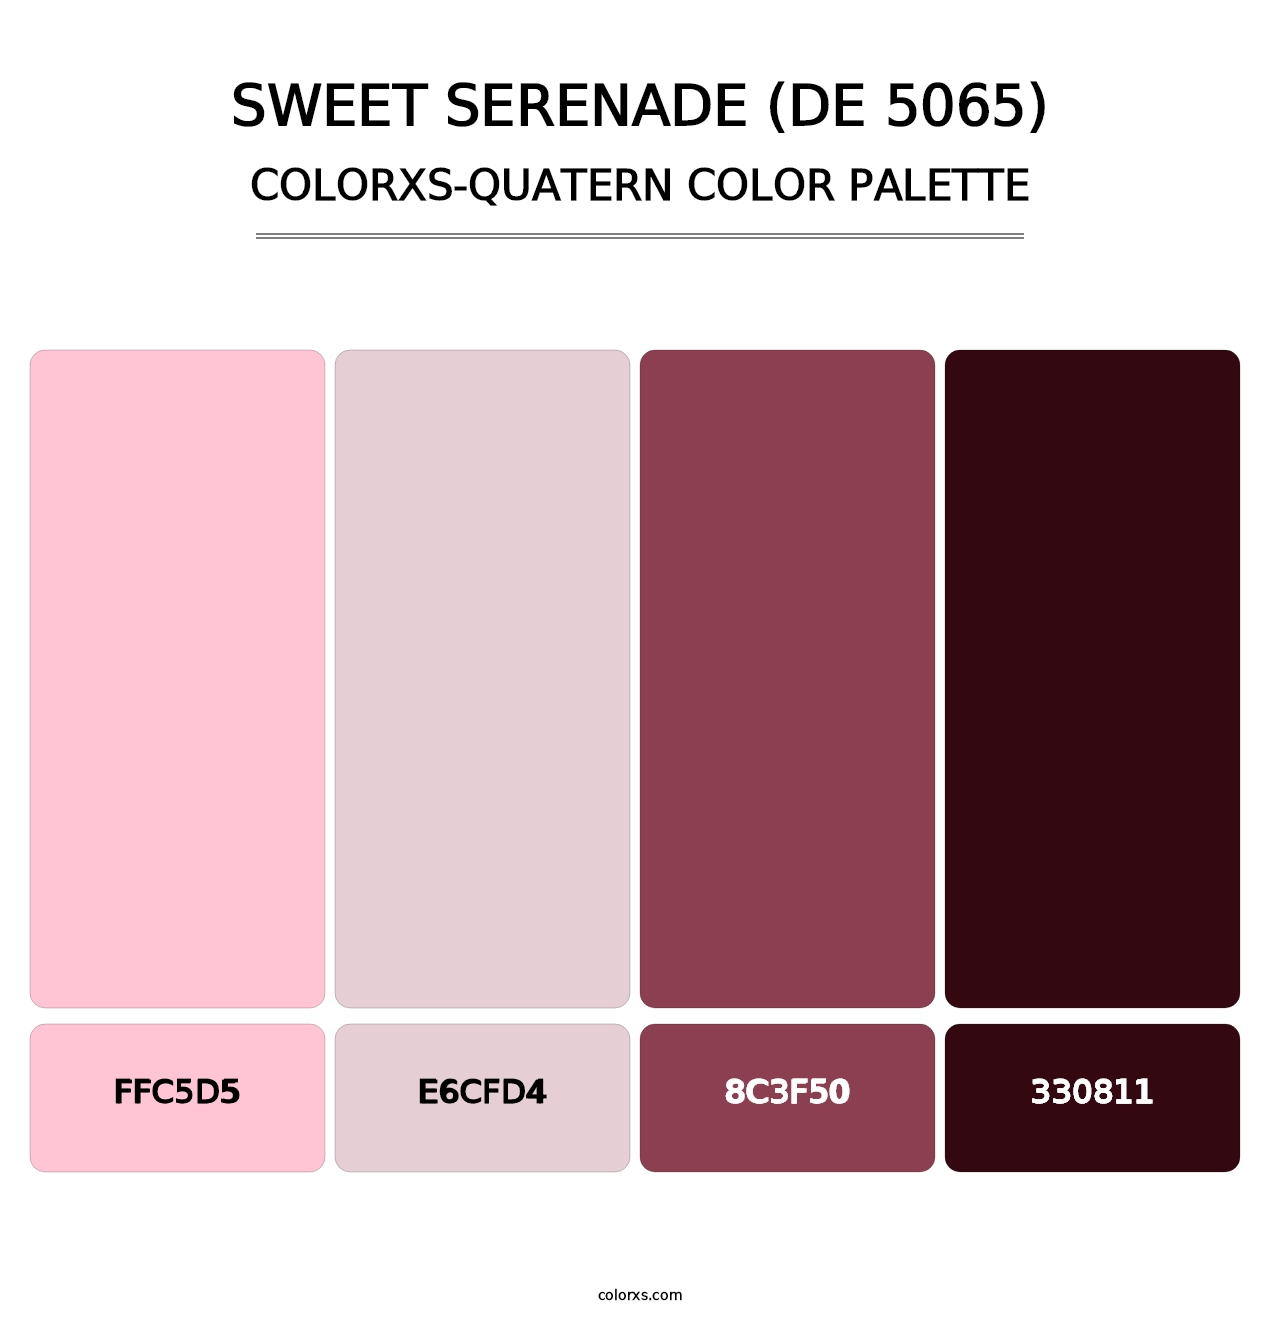 Sweet Serenade (DE 5065) - Colorxs Quatern Palette